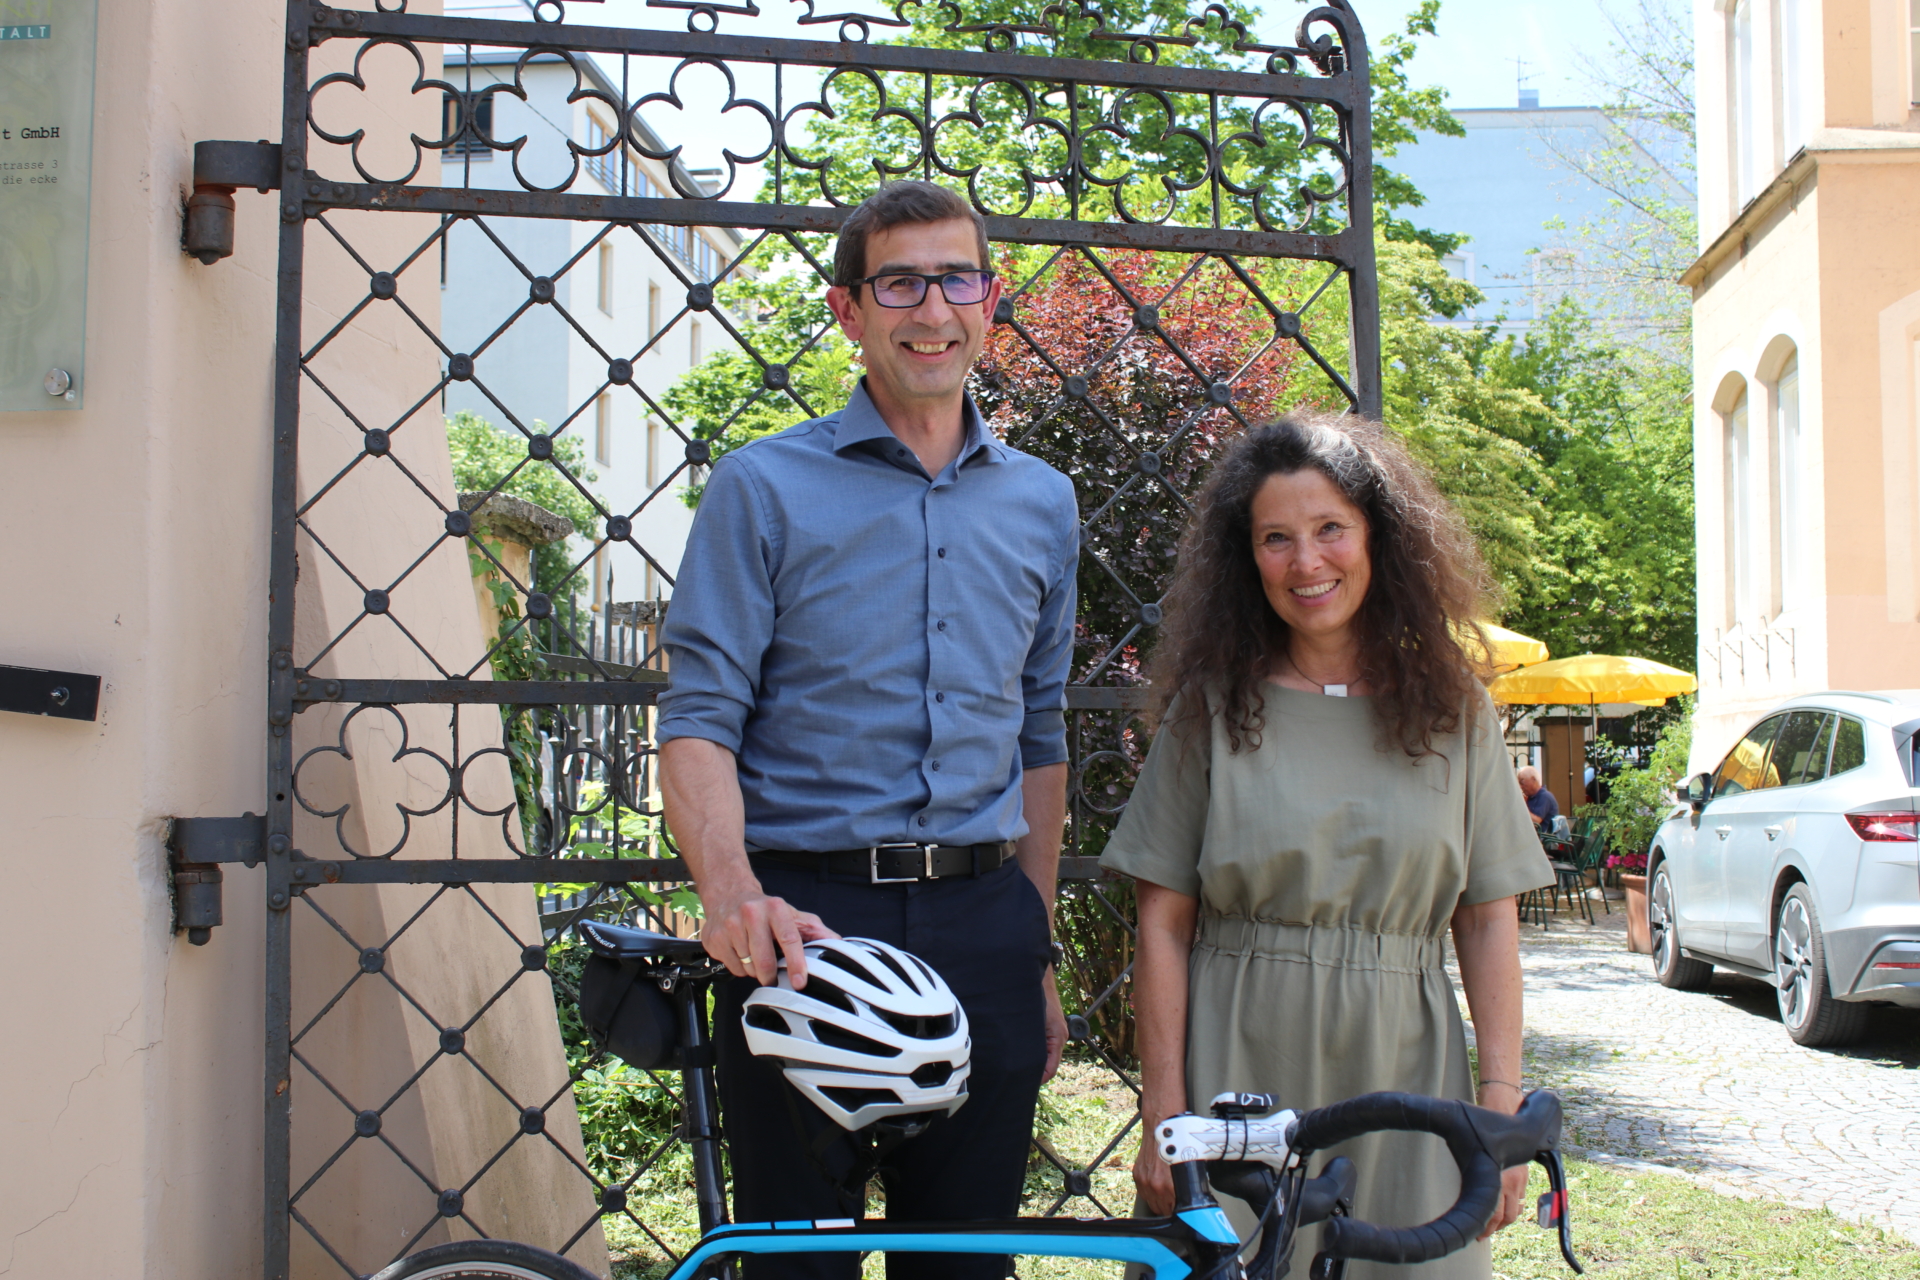 Mann mit Fahrradhelm in der Hand und Frau lachen in die Kamera